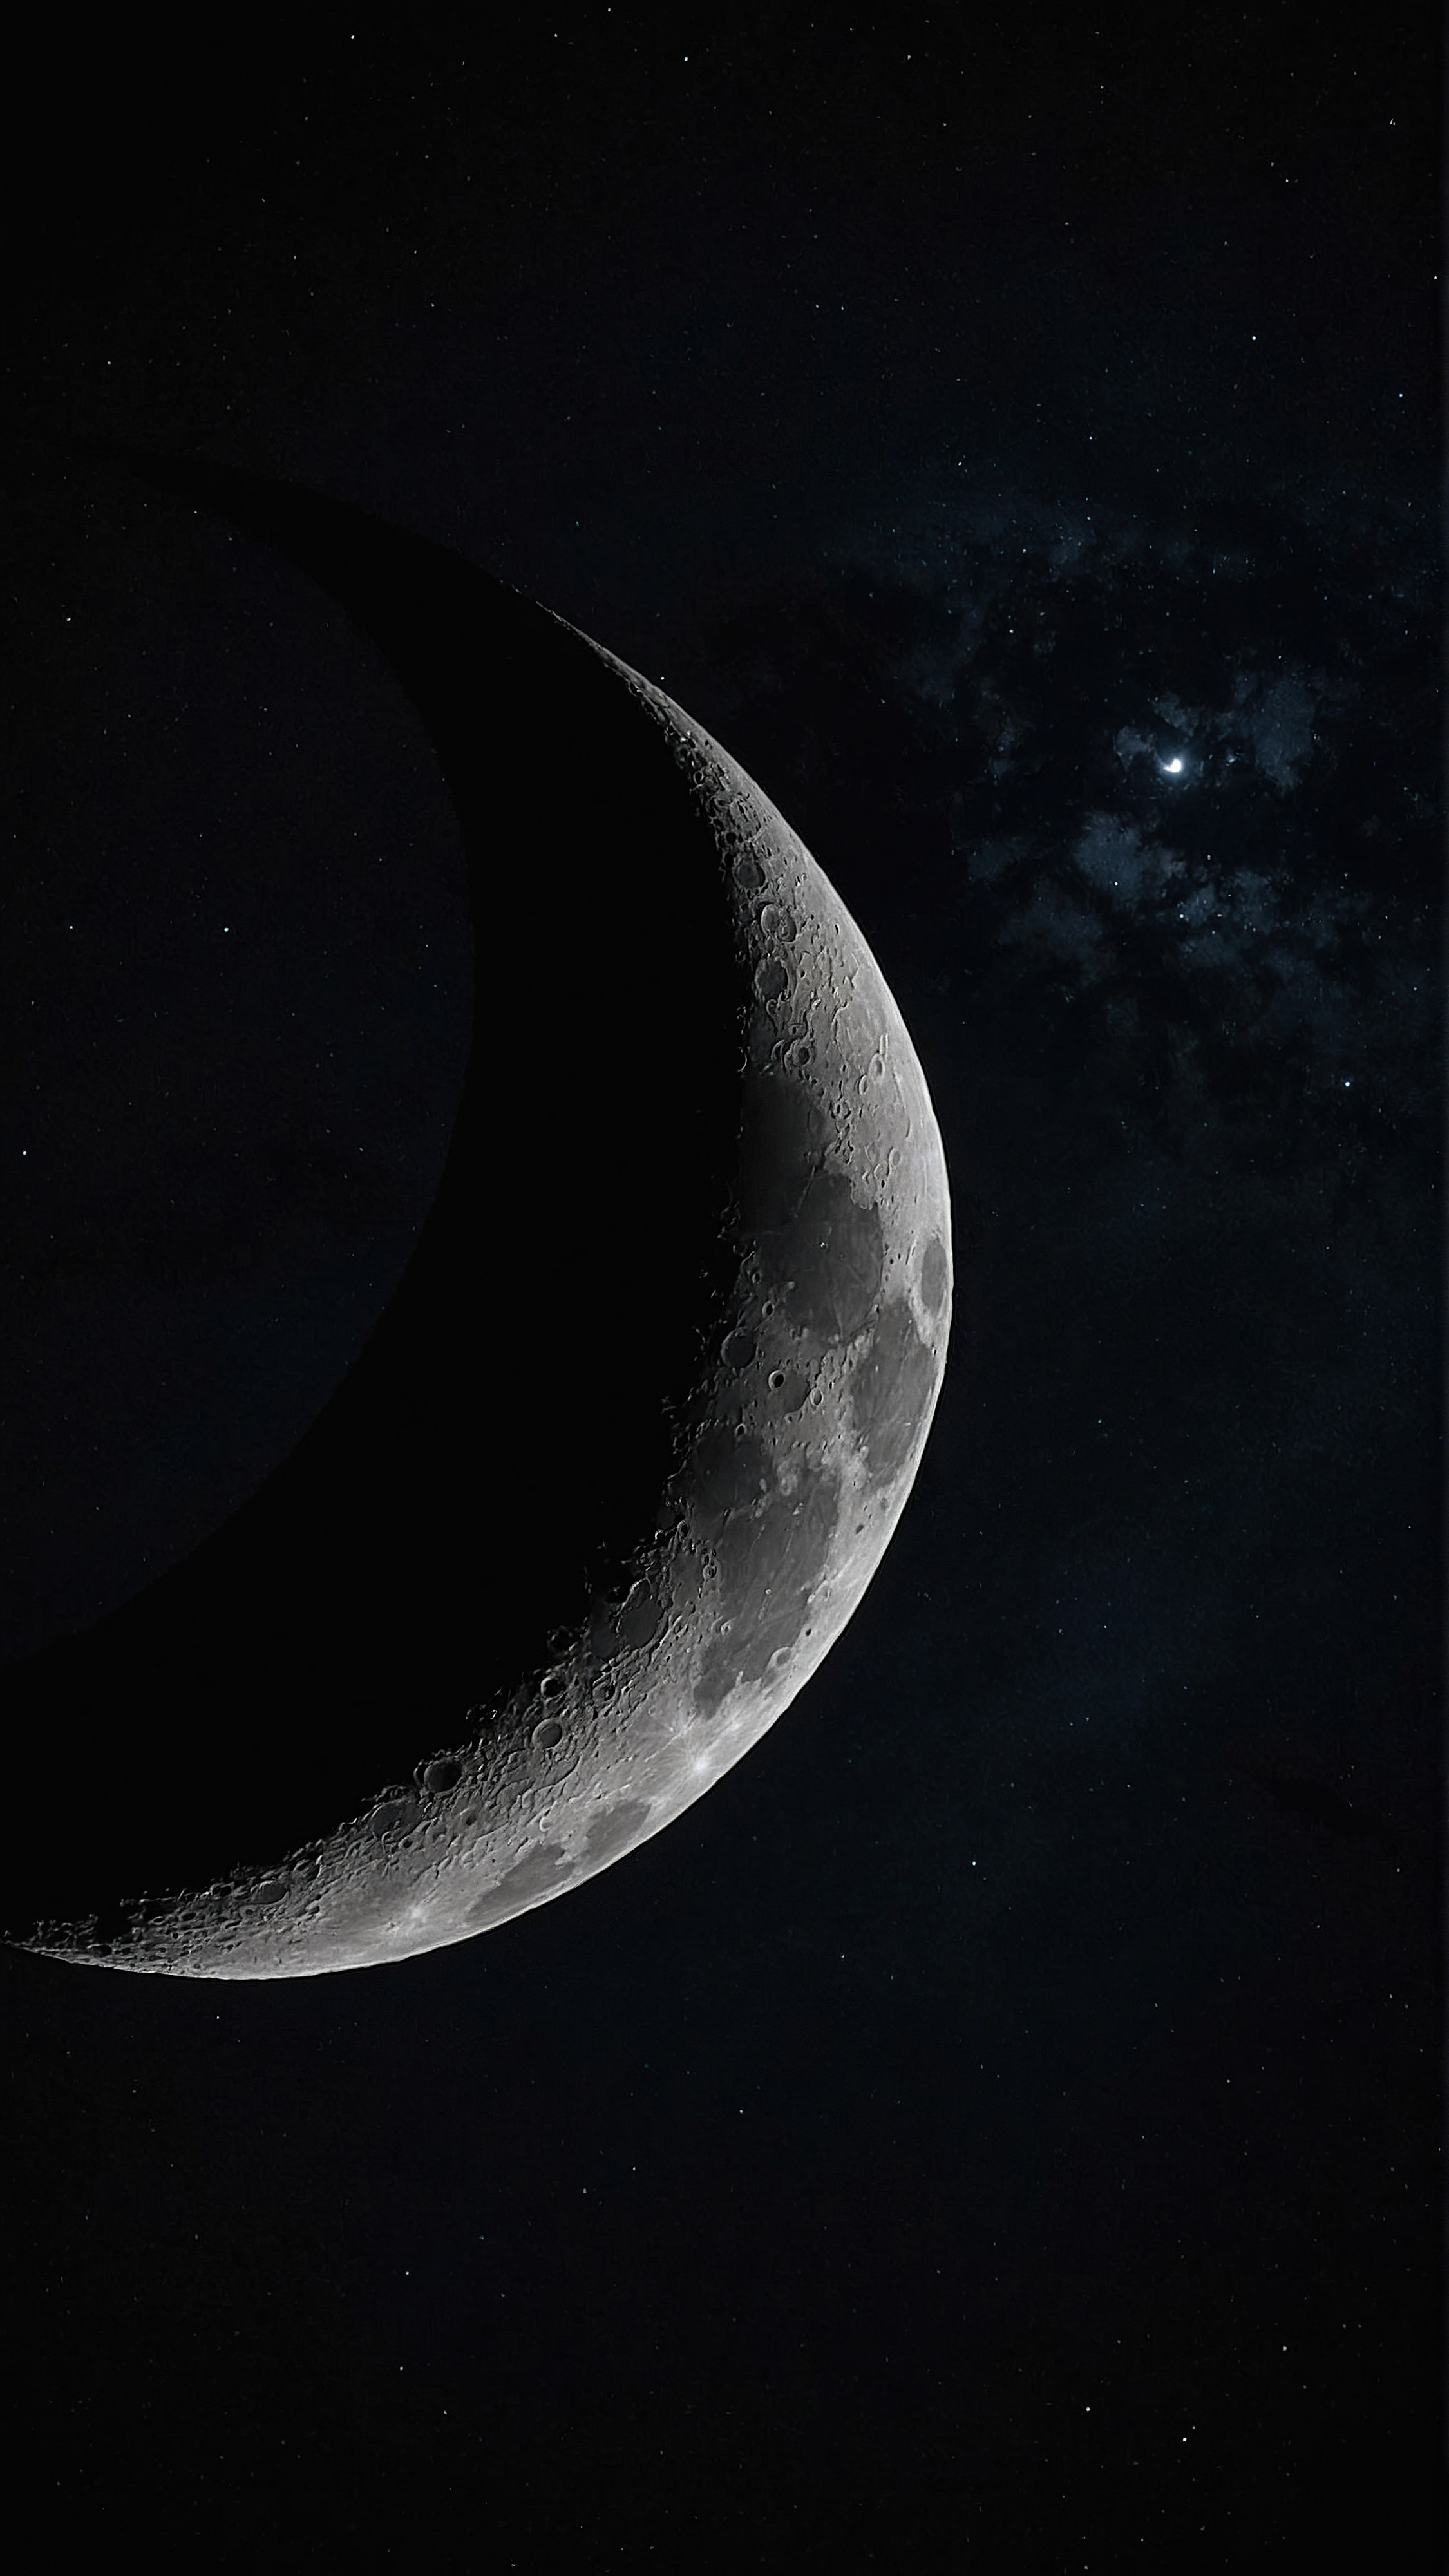 Découvrez le charme de l'espace à travers un beau fond d'écran tout noir pour iPhone, présentant une lune croissante détaillée, illuminée contre le fond sombre de l'espace.